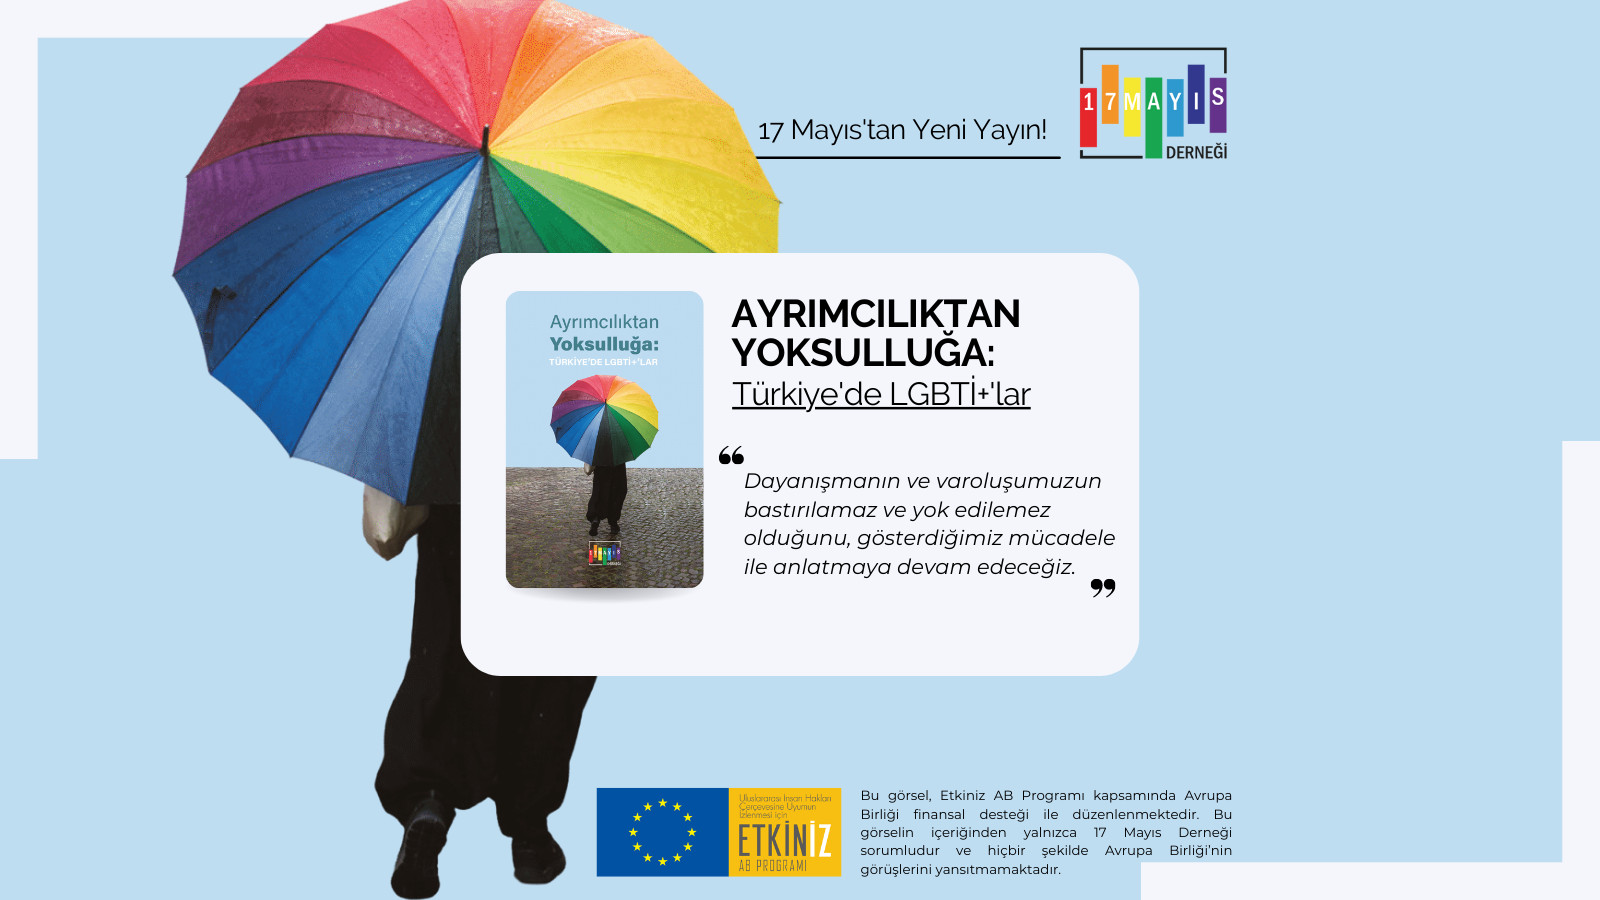 “Ayrımcılıktan Yoksulluğa: Türkiye’de LGBTİ+’lar” Raporu Çıktı! - 17 Mayıs